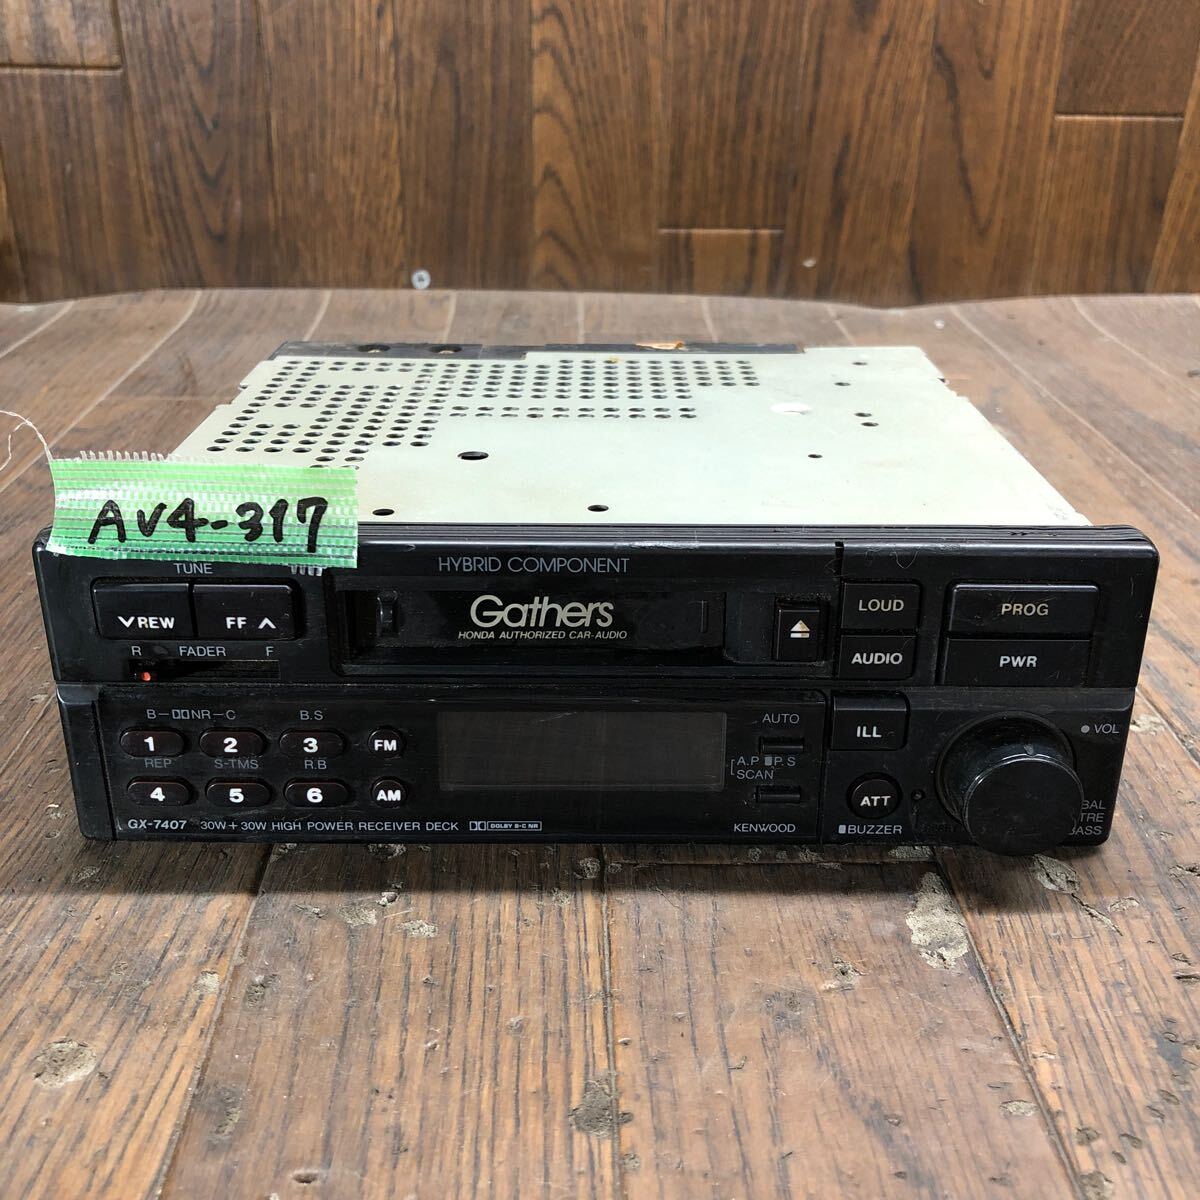 AV4-317 激安 カーステレオ テープデッキ HONDA Gathers 08A01-400-211 GX-7407 10600091 カセット FM/AM 通電未確認 ジャンクの画像1